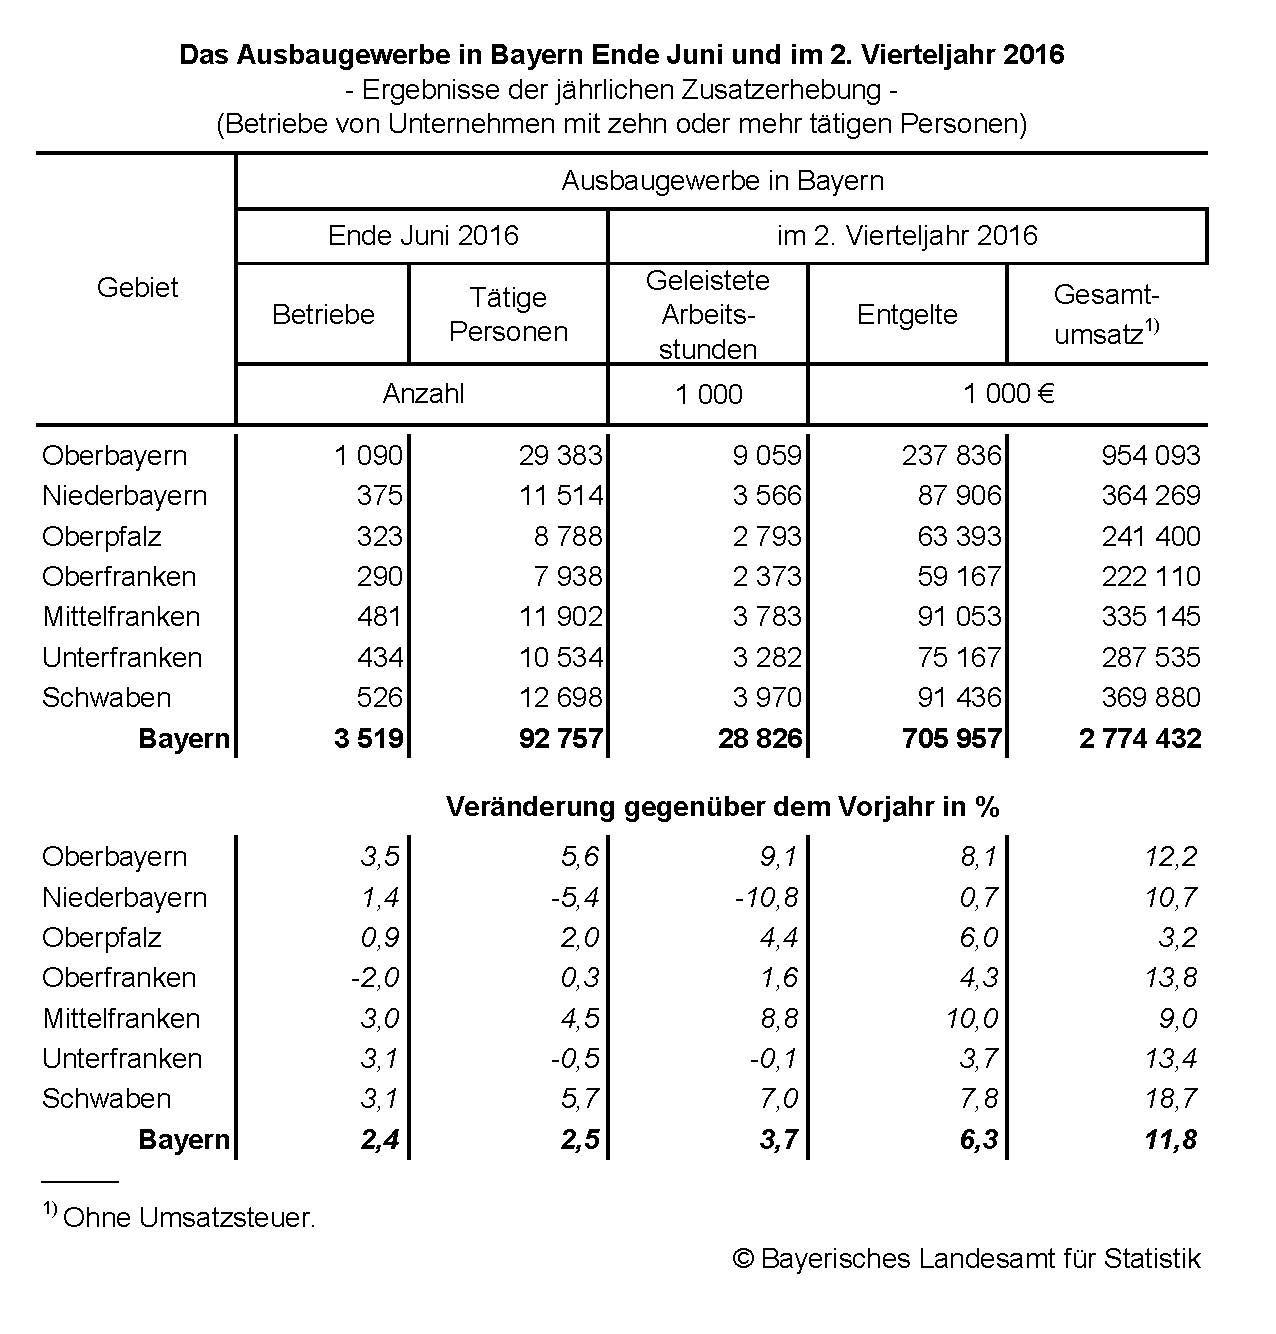 Das Ausbaugewerbe in Bayern Ende Juni und im 2. Vierteljahr 2016